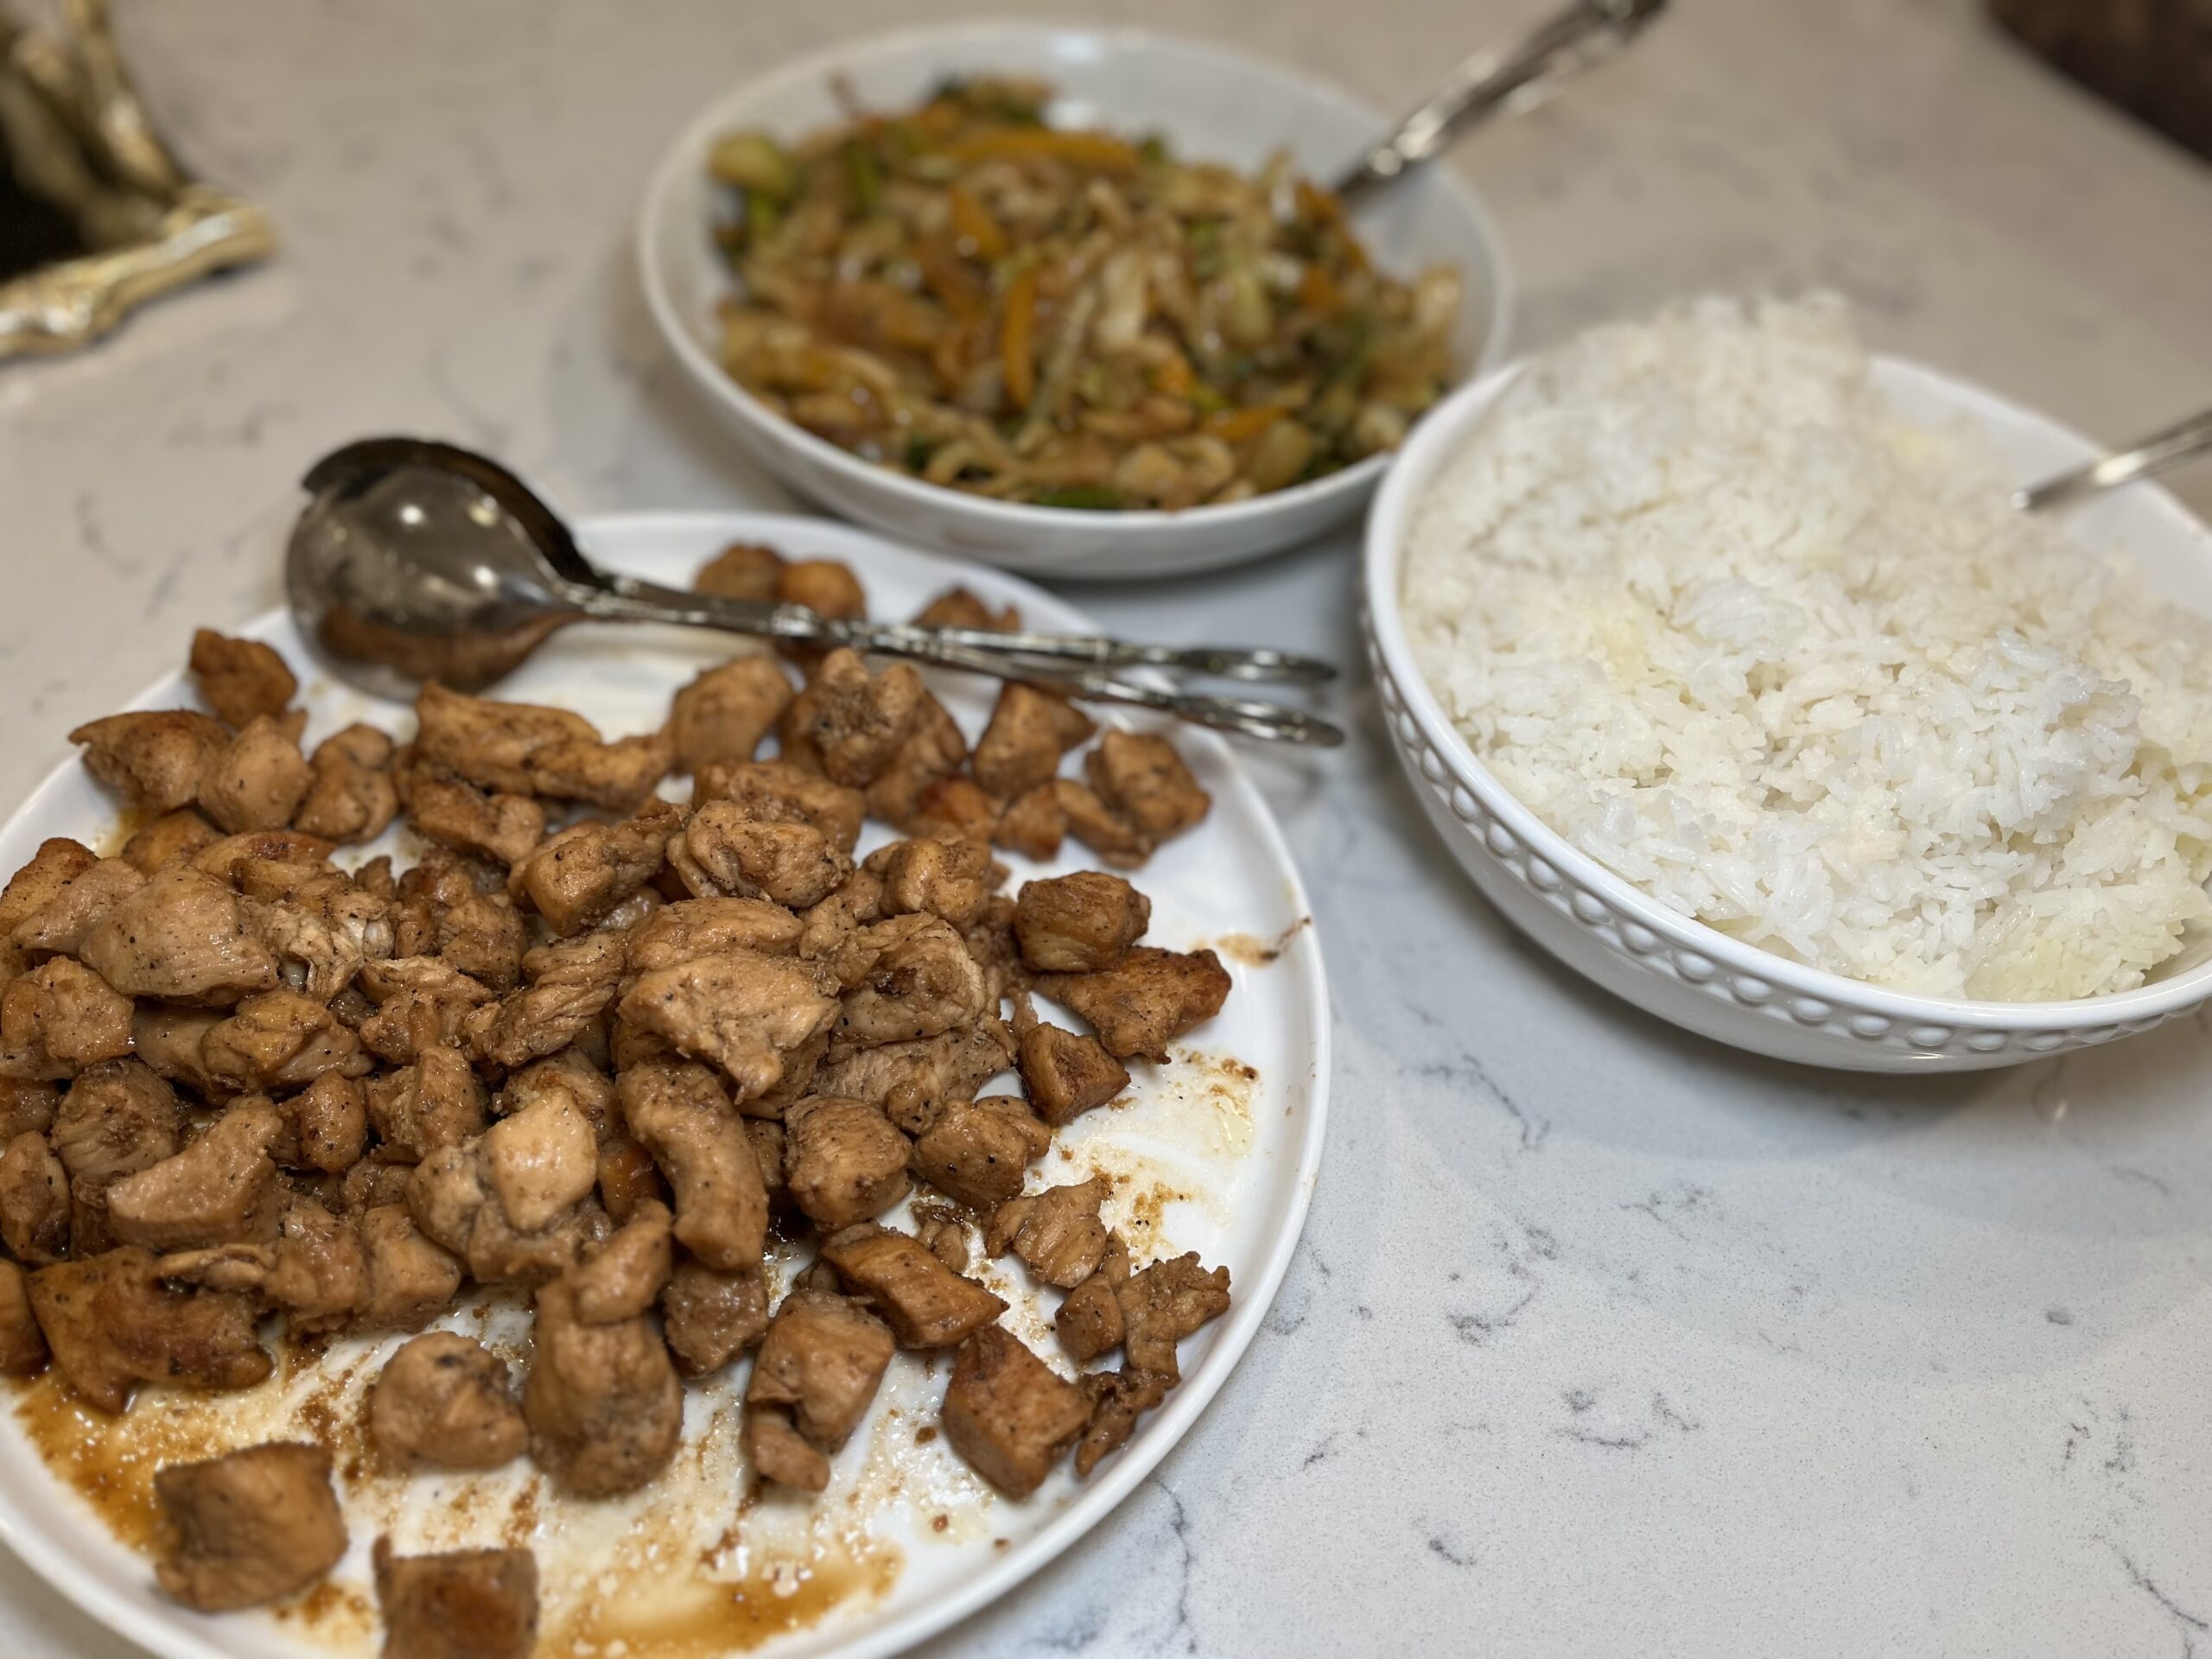 homemade hibachi chicken, veggies and rice